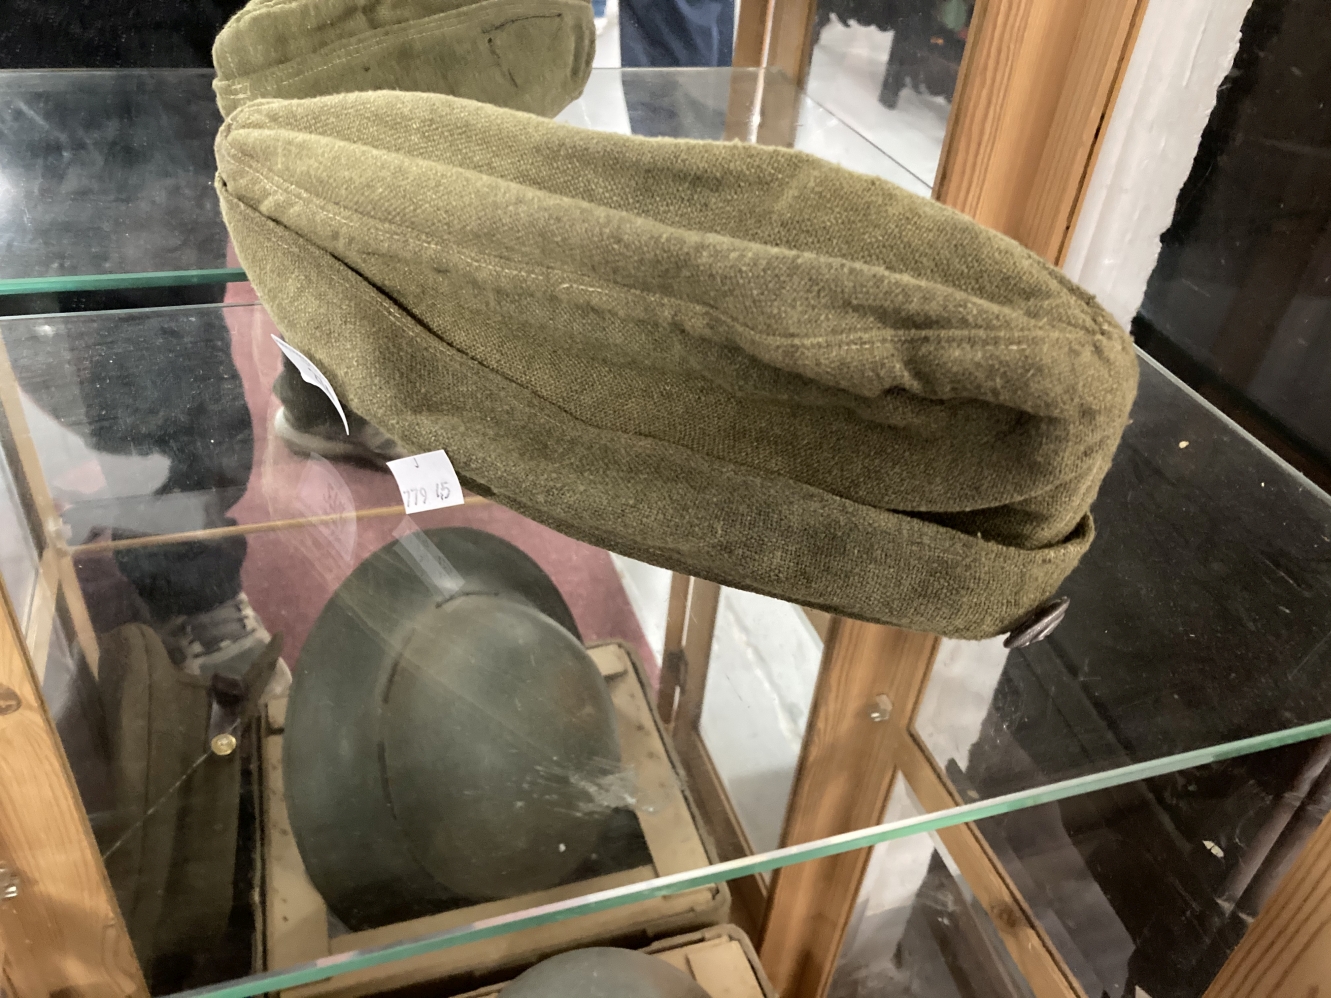 Militaria: Third Reich pre-WWII SS Verfungungstruppen side cap with Totenkopf button.